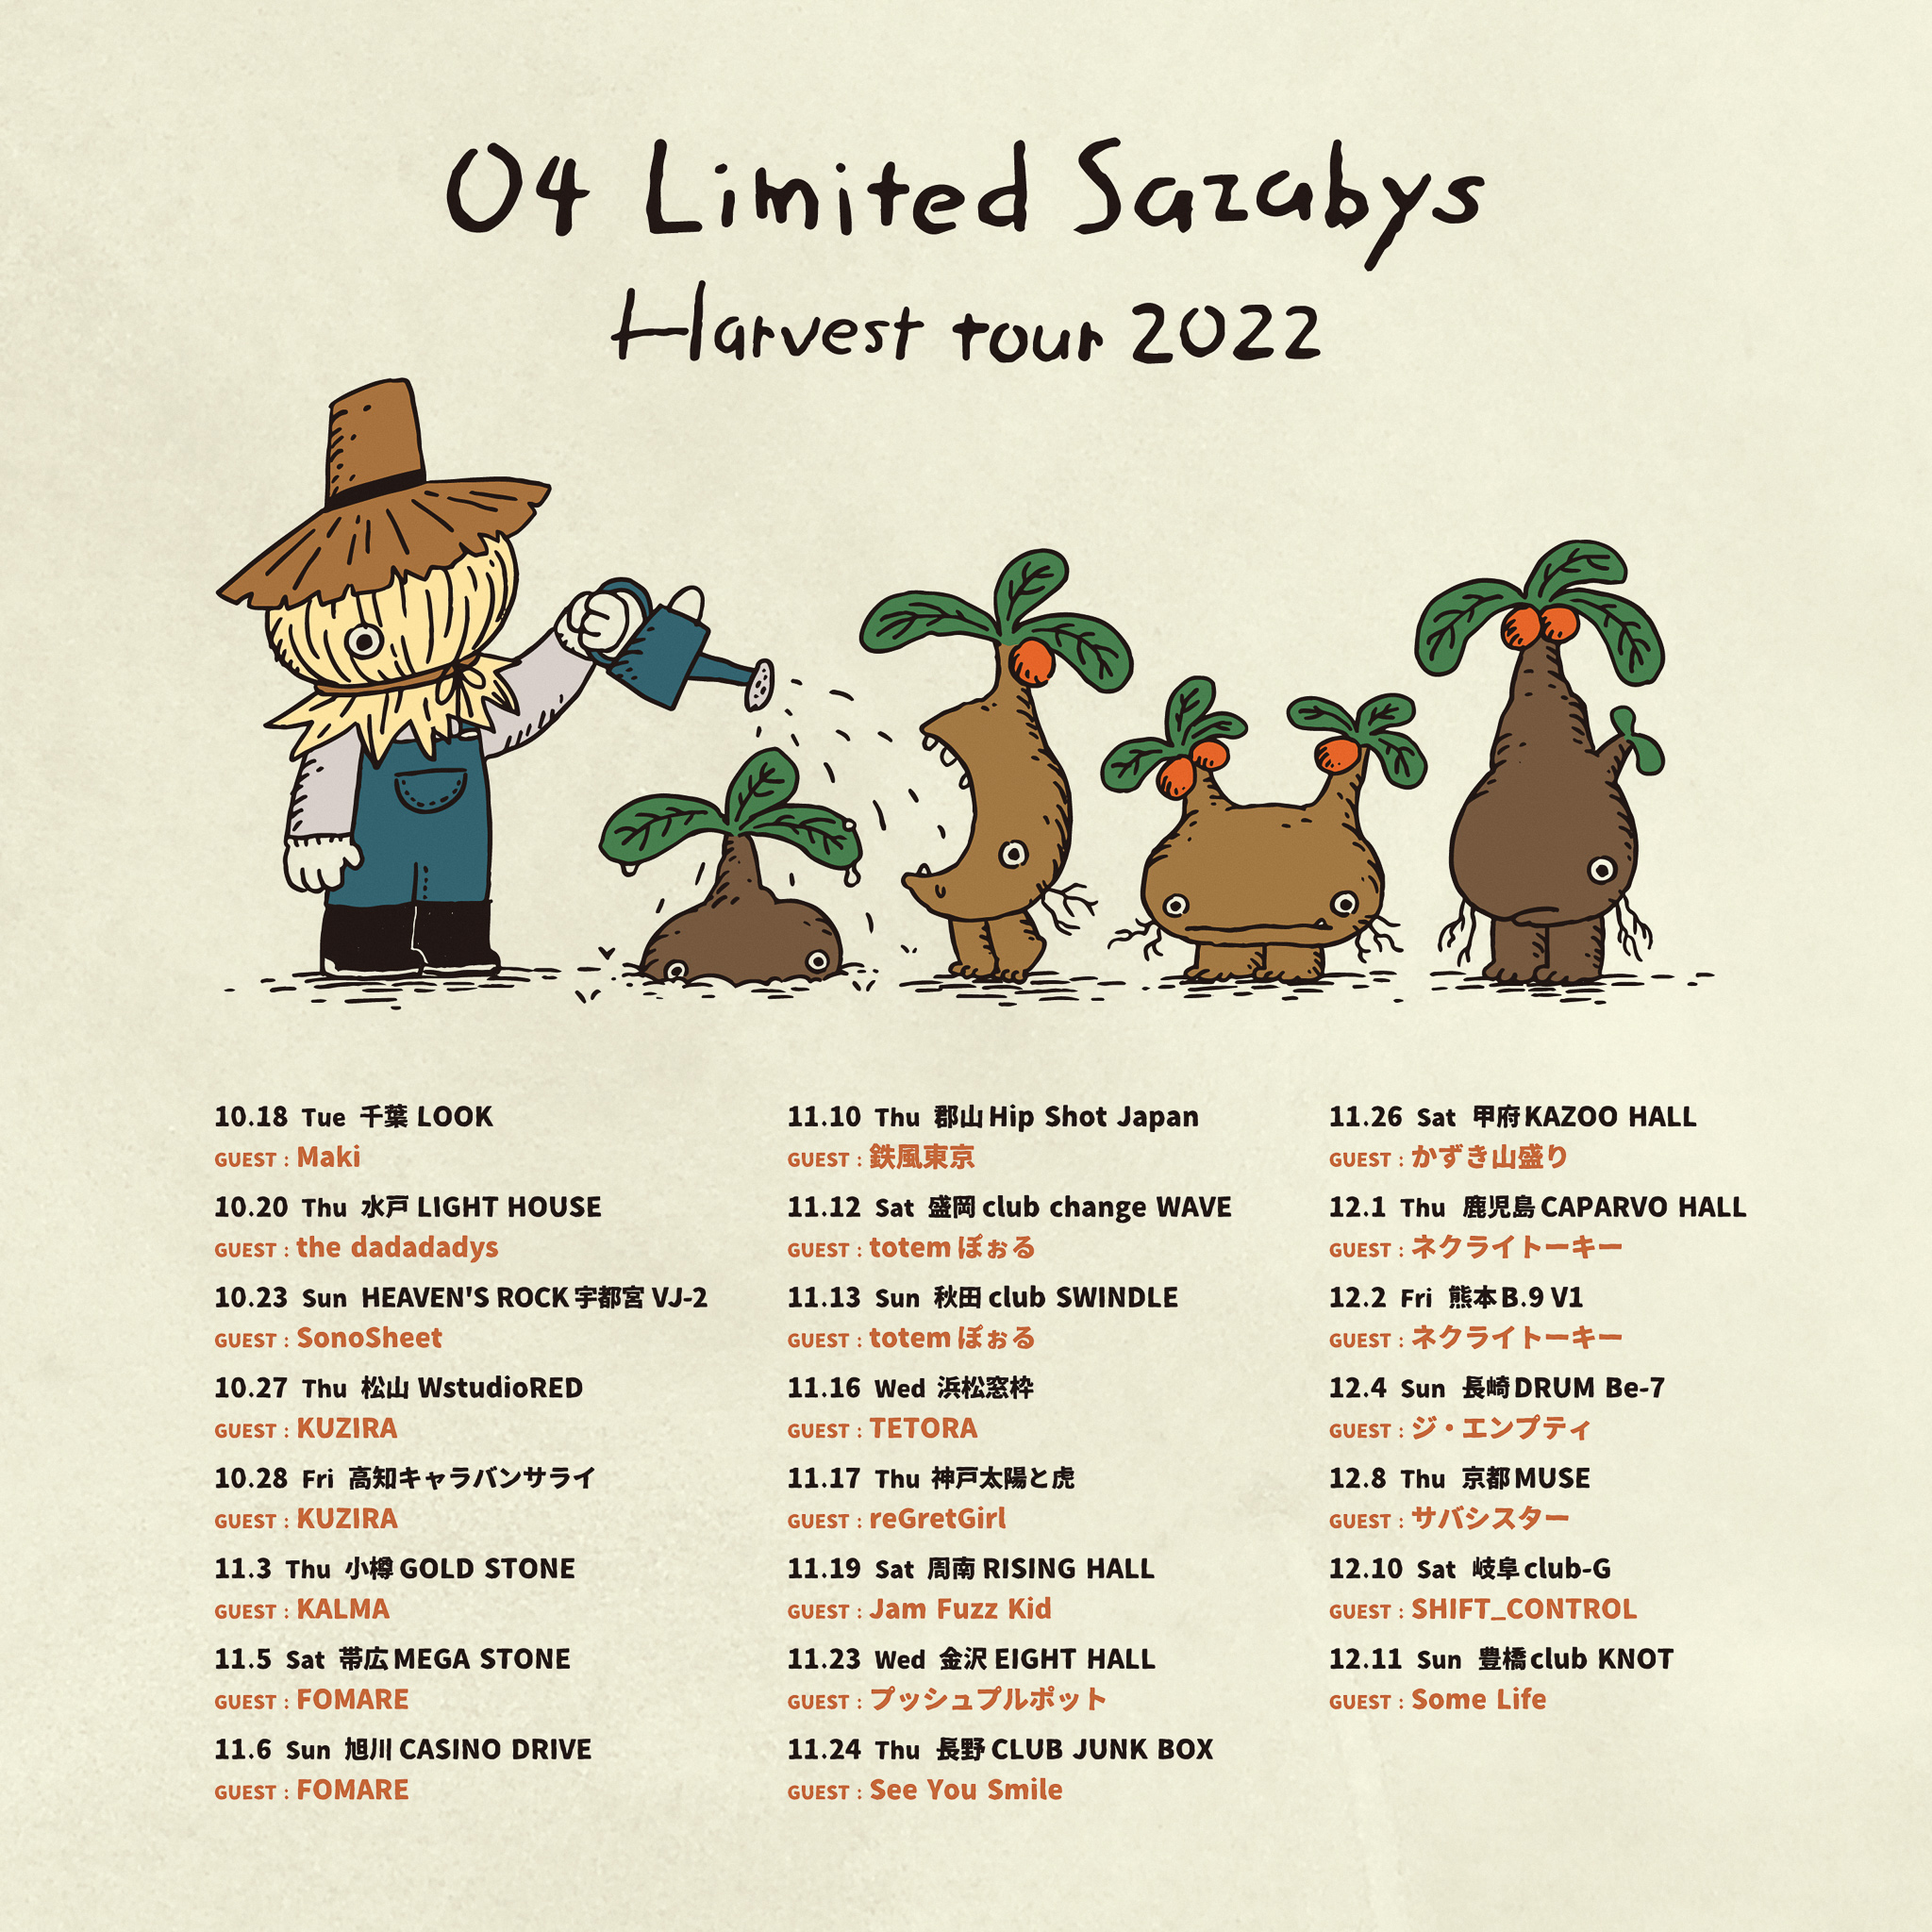 【山梨】04 Limited Sazabys "Harvest tour 2022" (甲府KAZOO HALL)